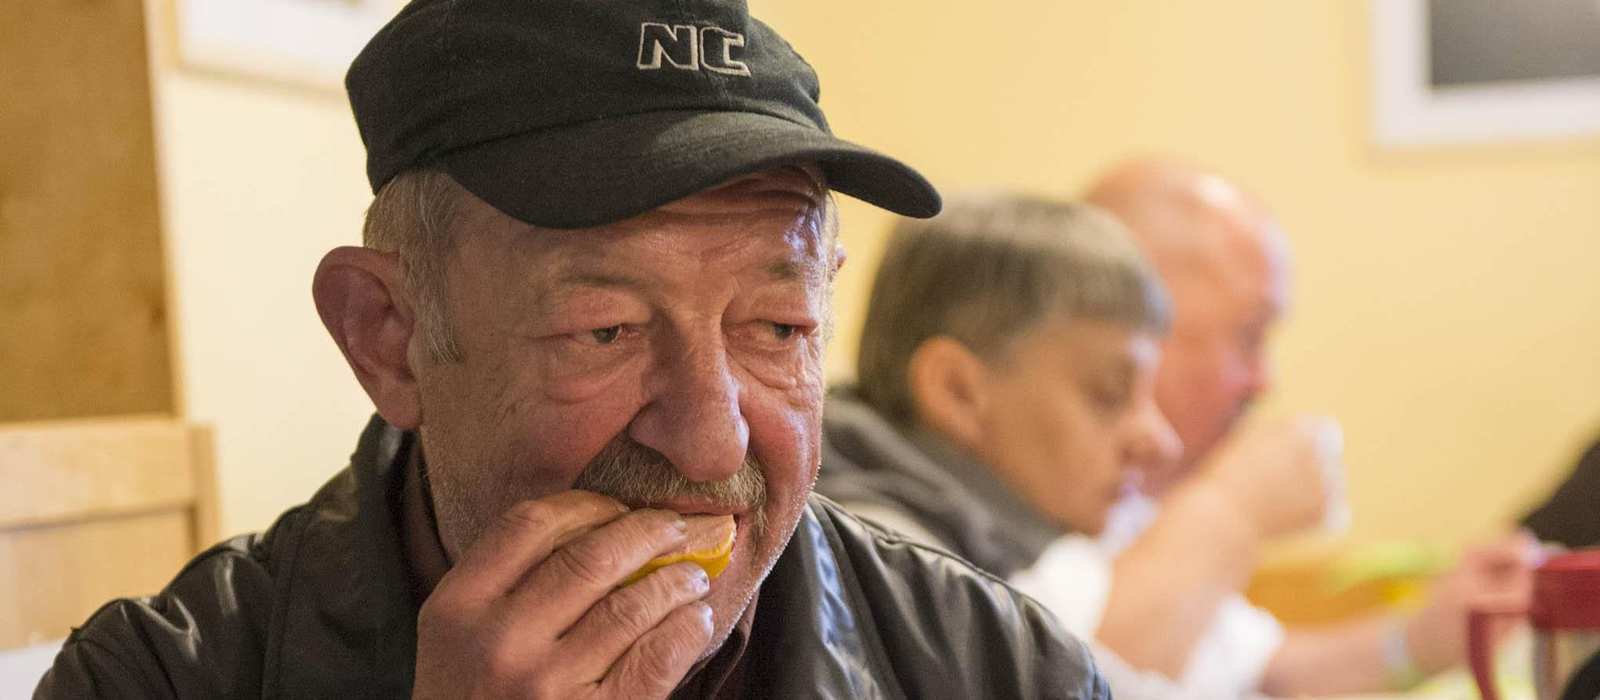 Ein älterer Mann mit abgetragener Jacke sitzt in einem Gemeinschaftsraum und isst ein Stück Brot. Im Hintergrund sind weitere Menschen an einem Tisch.